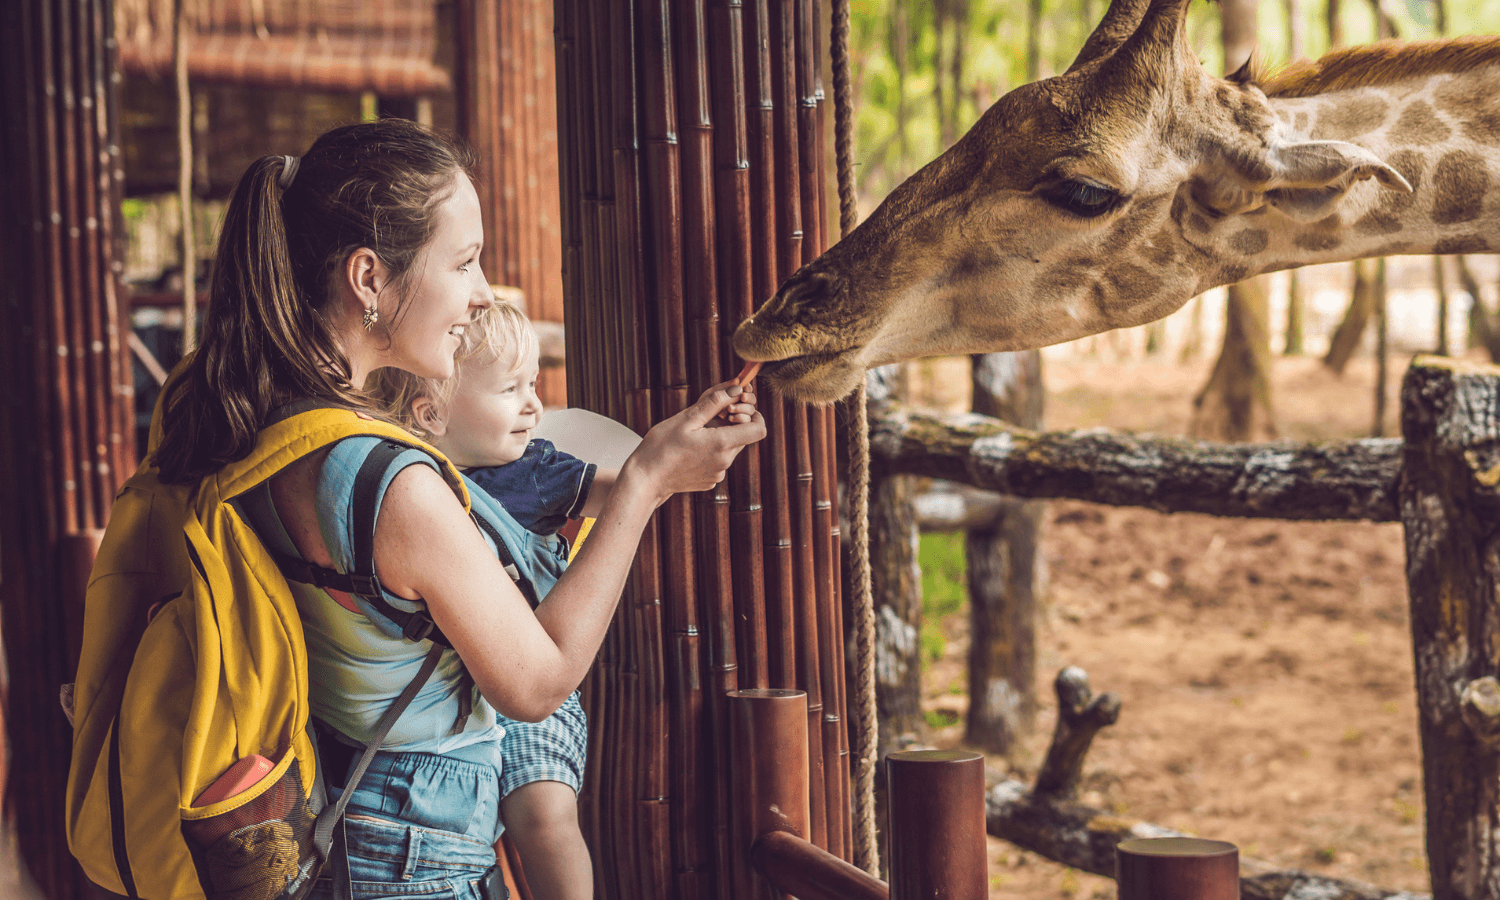 Tagesausflüge in den Zoo kommen bei Kindern besonders gut an. Auf dem Foto füttern Mutter und Kind eine Giraffe. © iStock.com